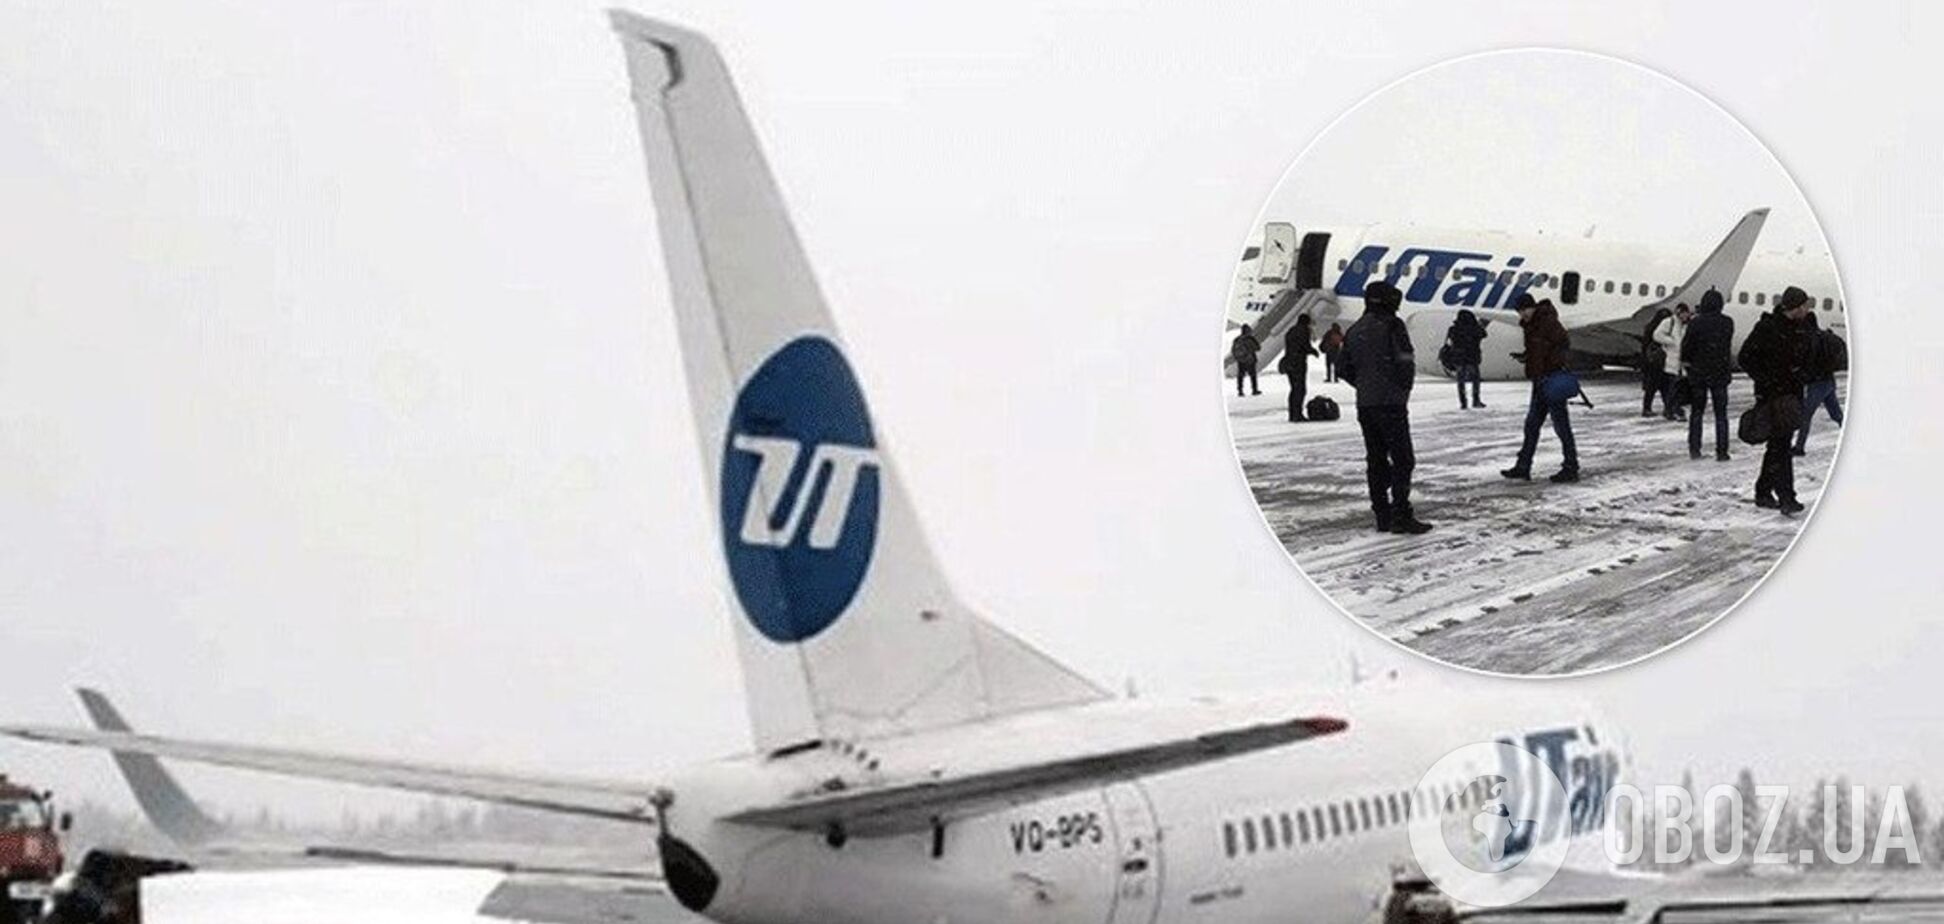 Пассажиры съезжали по крыльям: в России случилось серьезное ЧП с самолетом